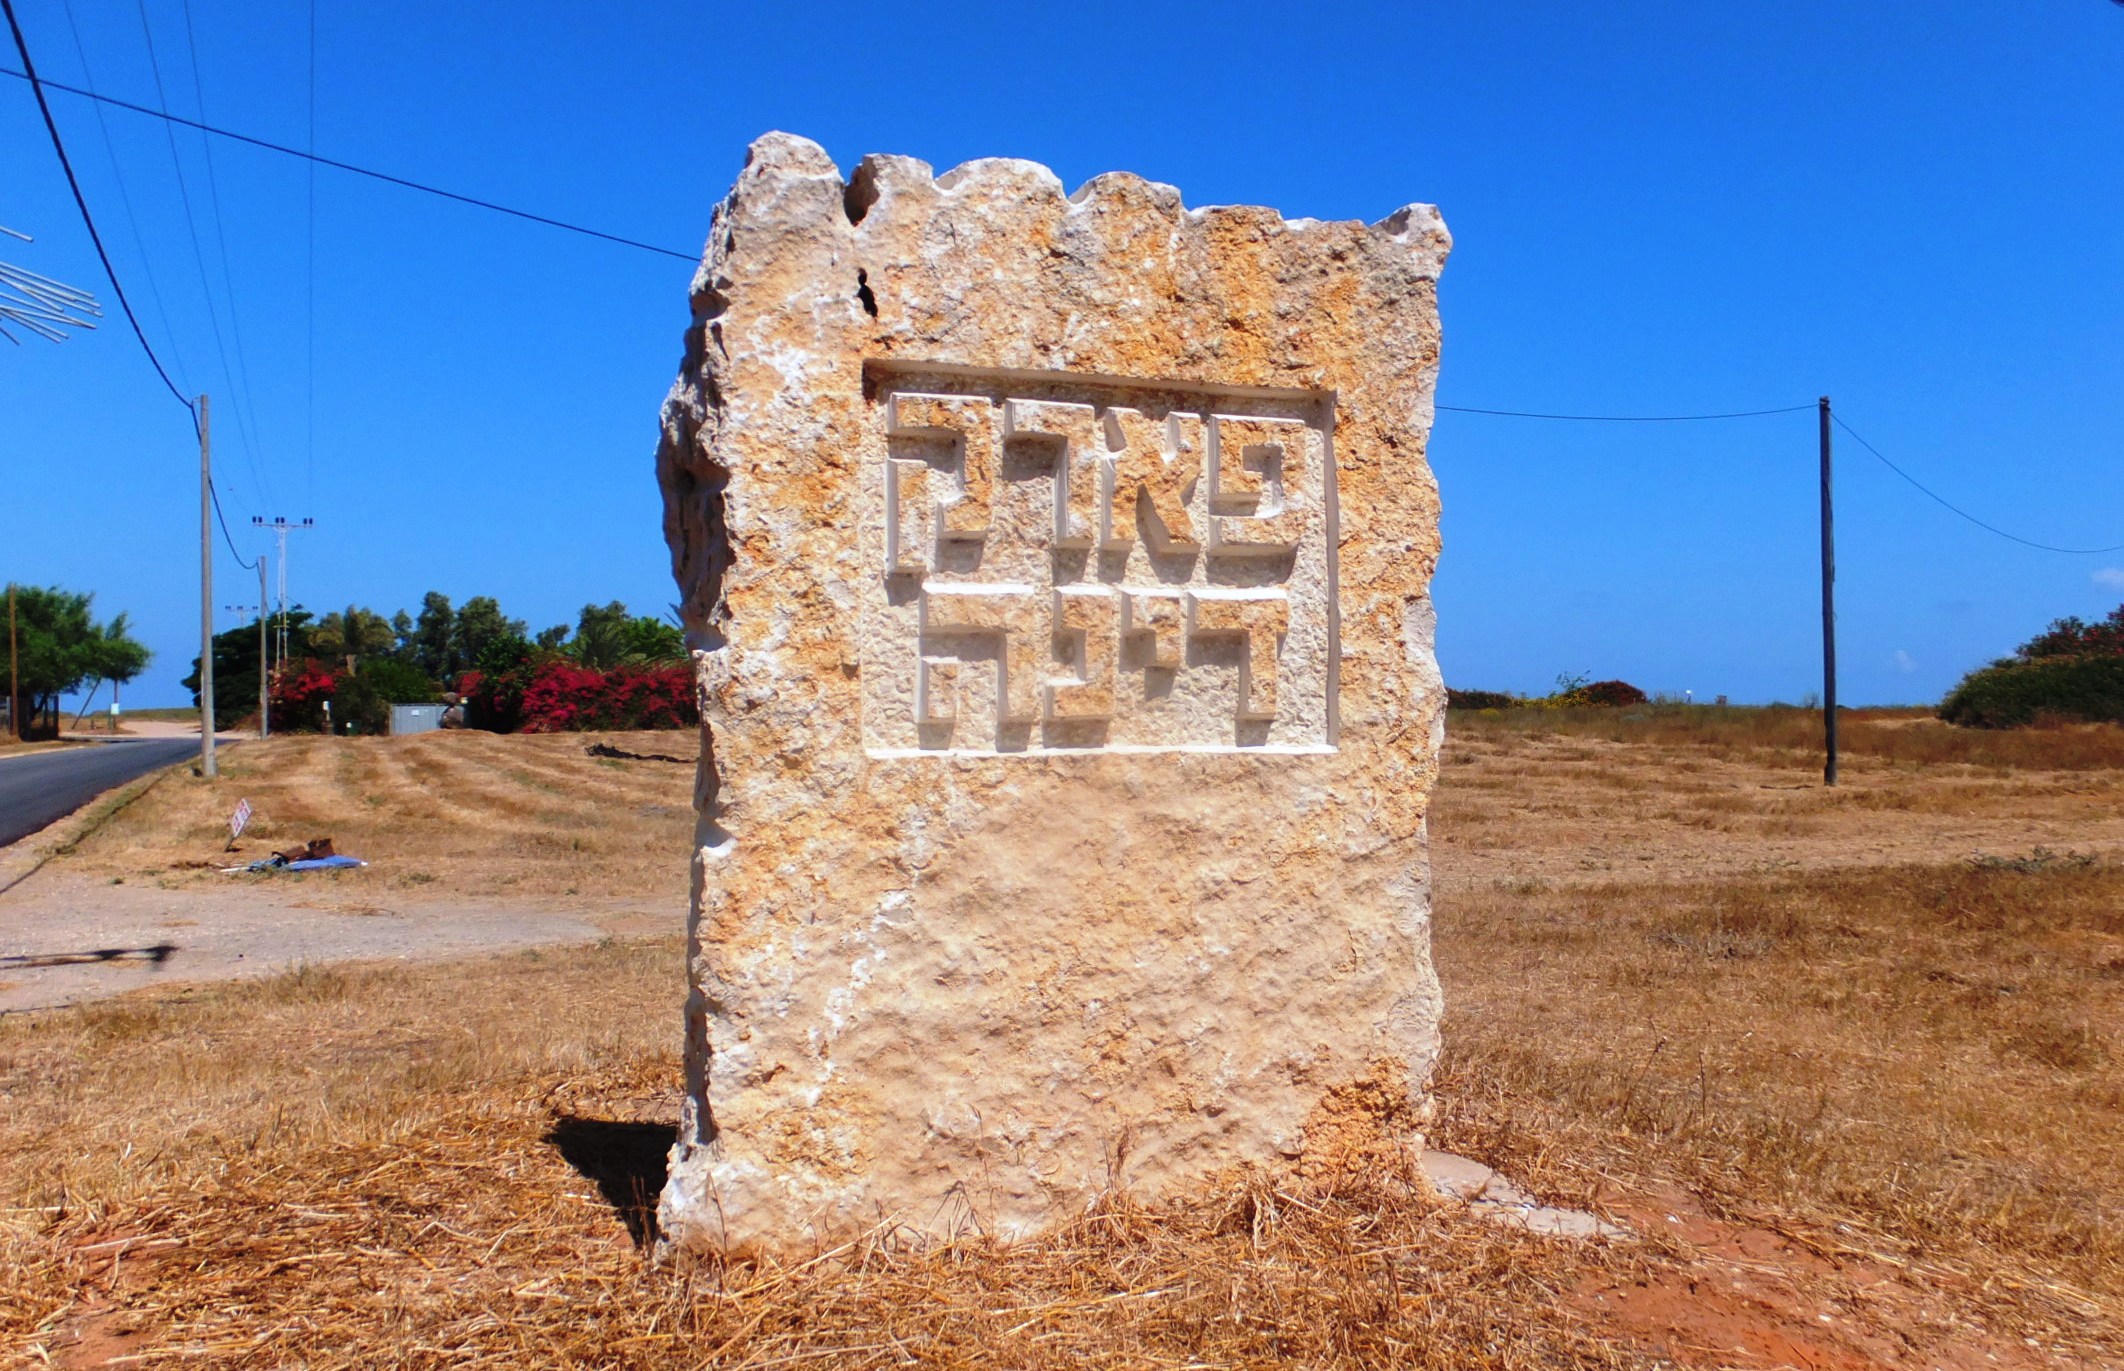 Надпись на камне: "Парк Дины"